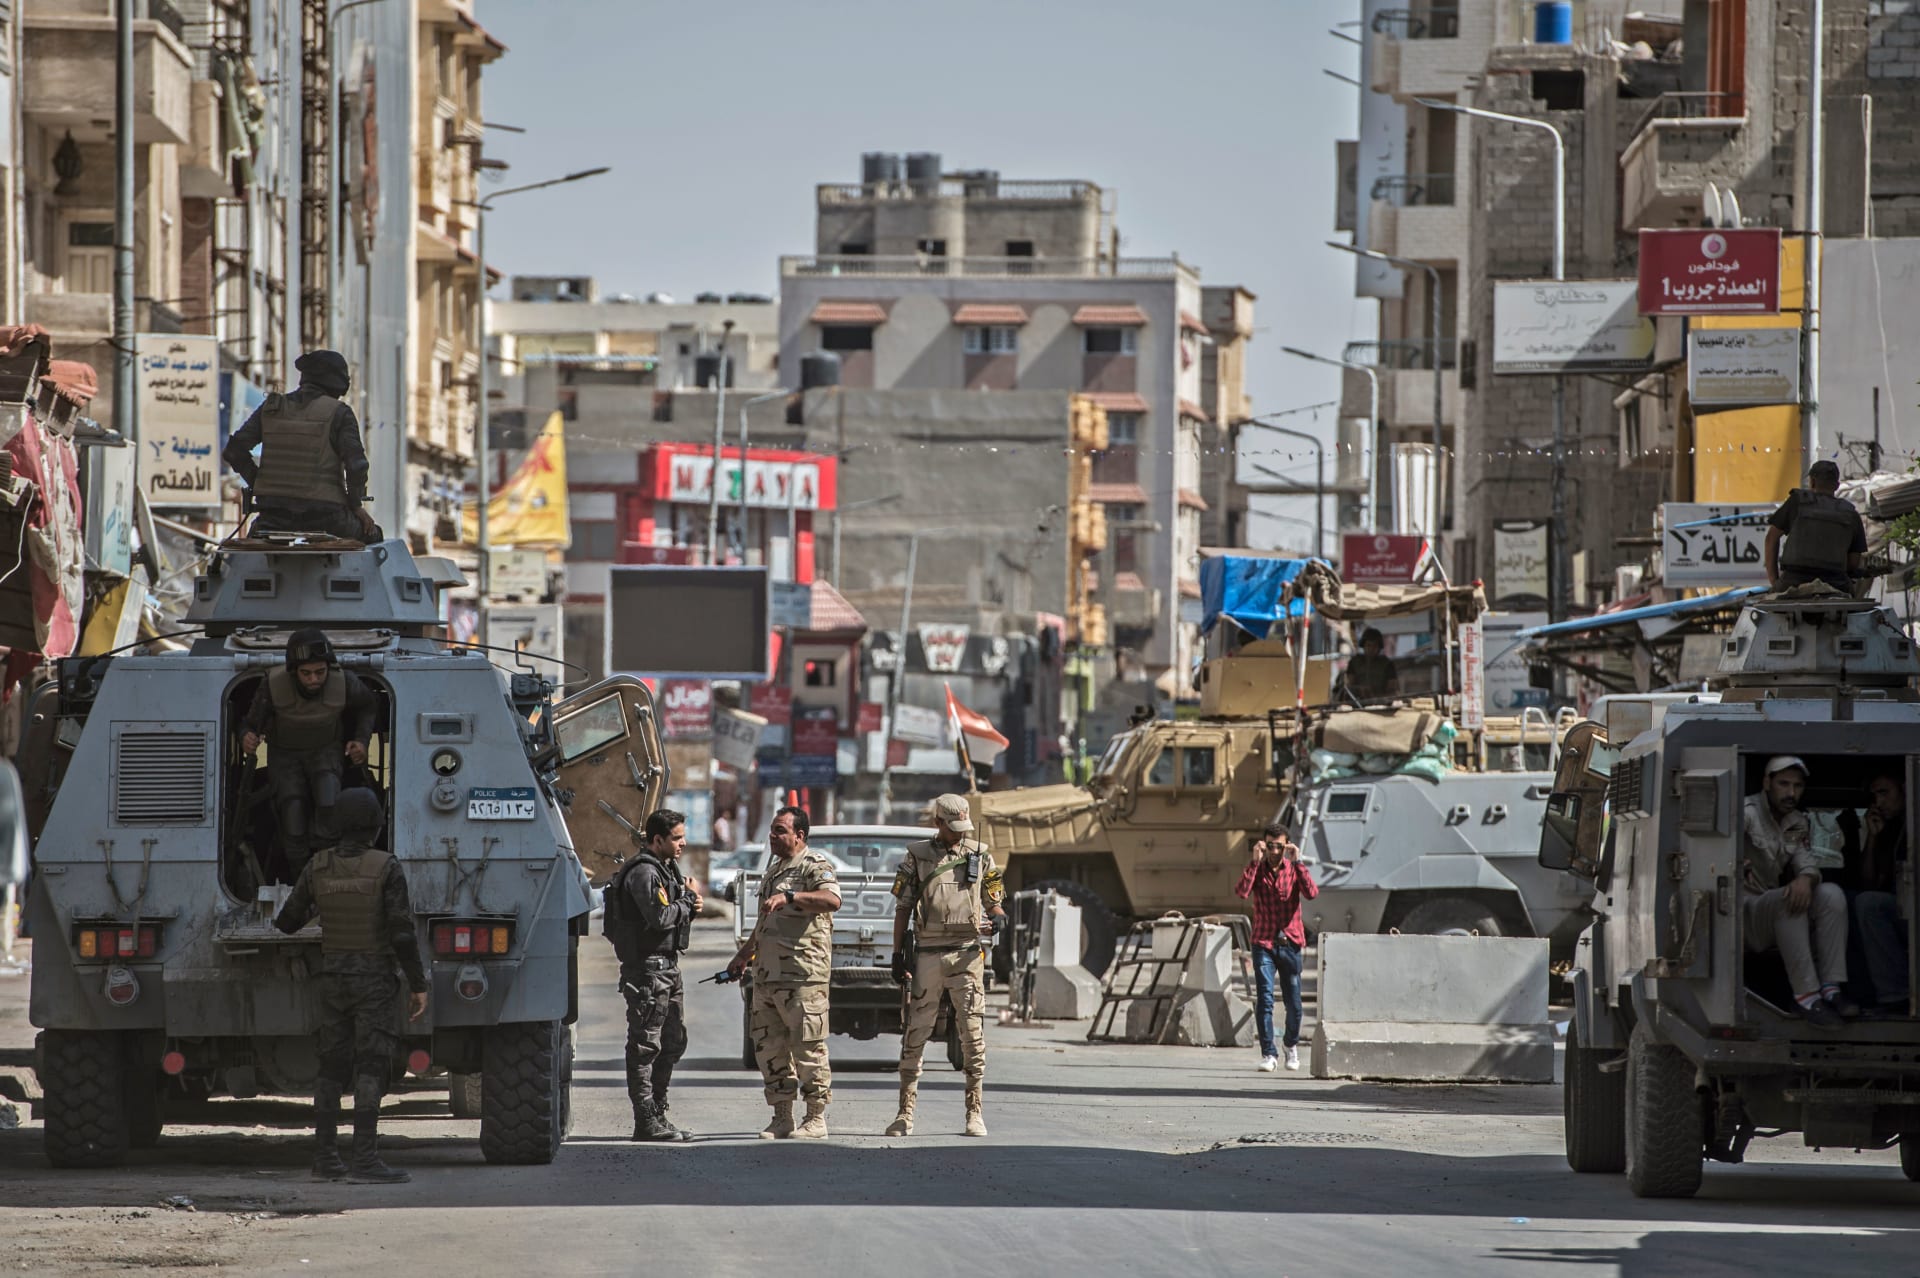 الجيش المصري يعلن استهداف "بؤرة إرهابية" في شمال سيناء ويقتل "تكفيريين"  اثنين - CNN Arabic